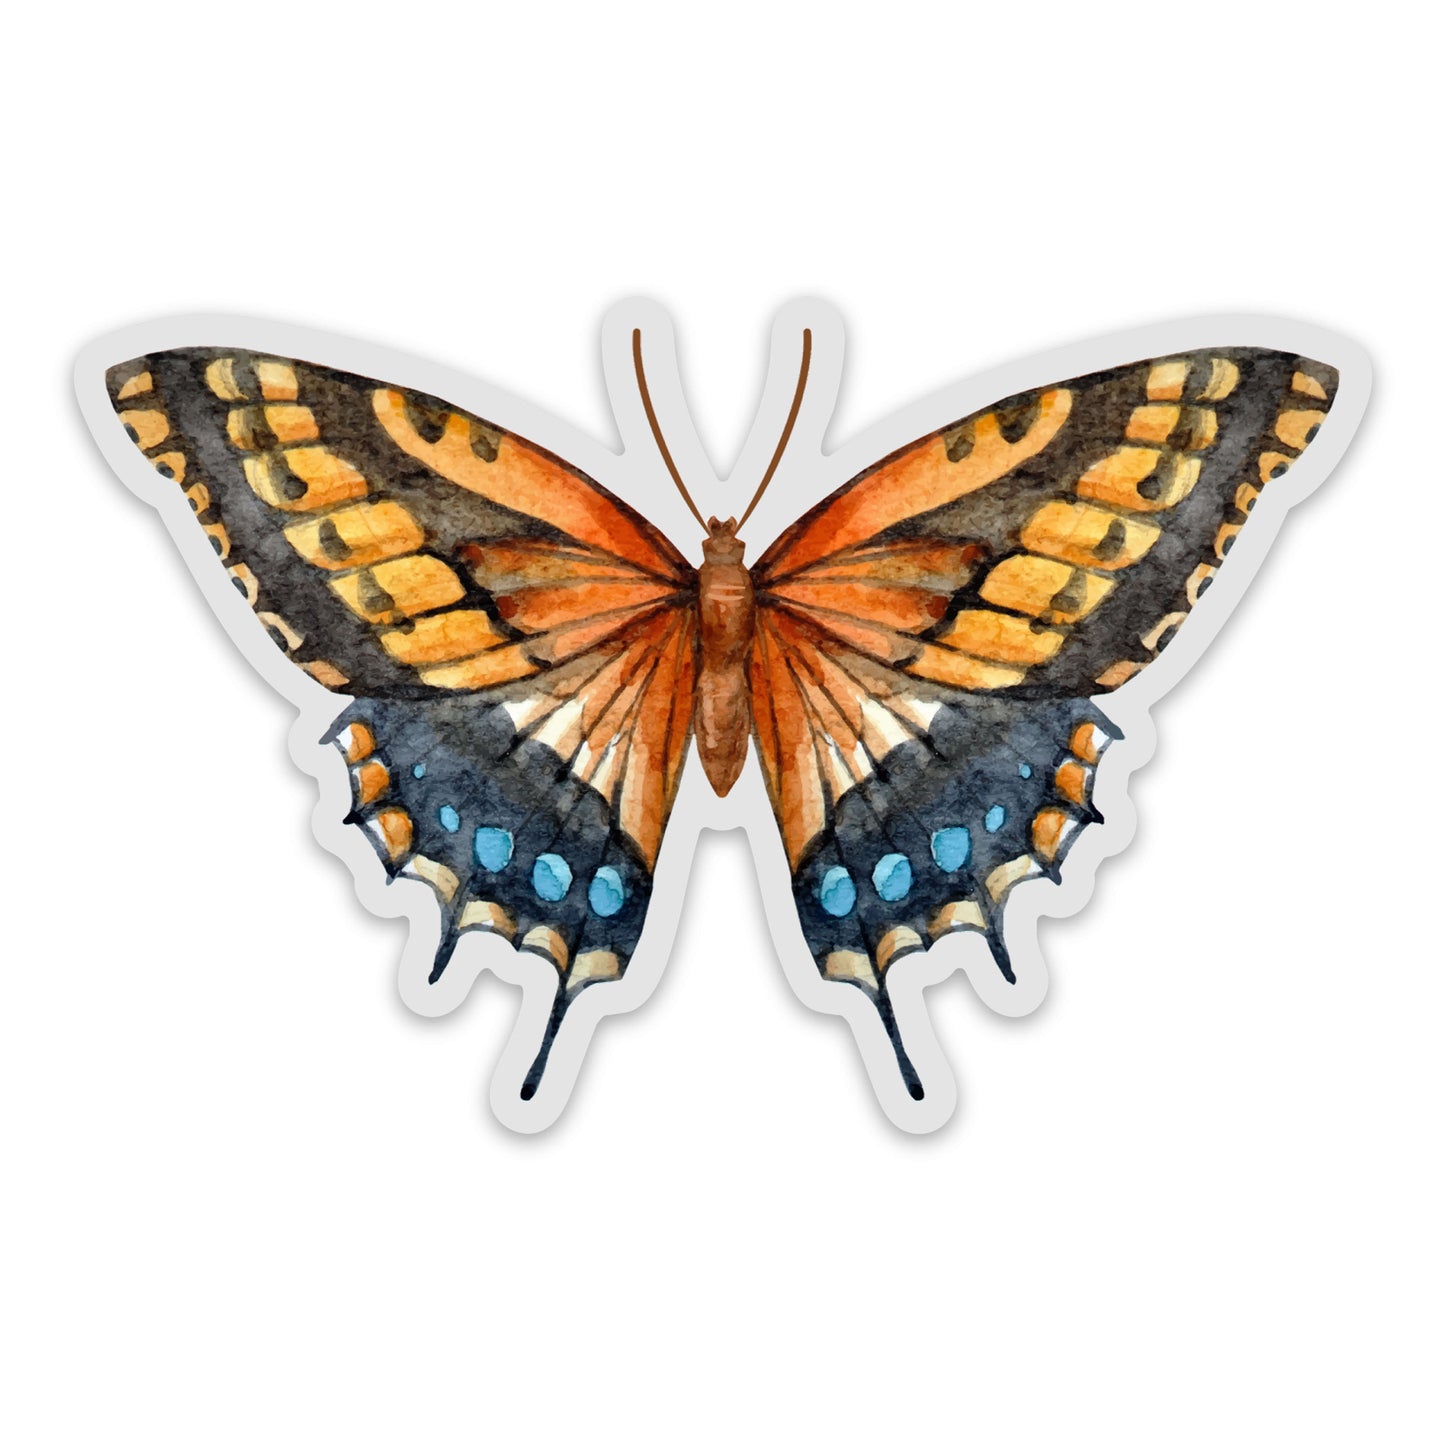 Watercolor Butterfly Sticker